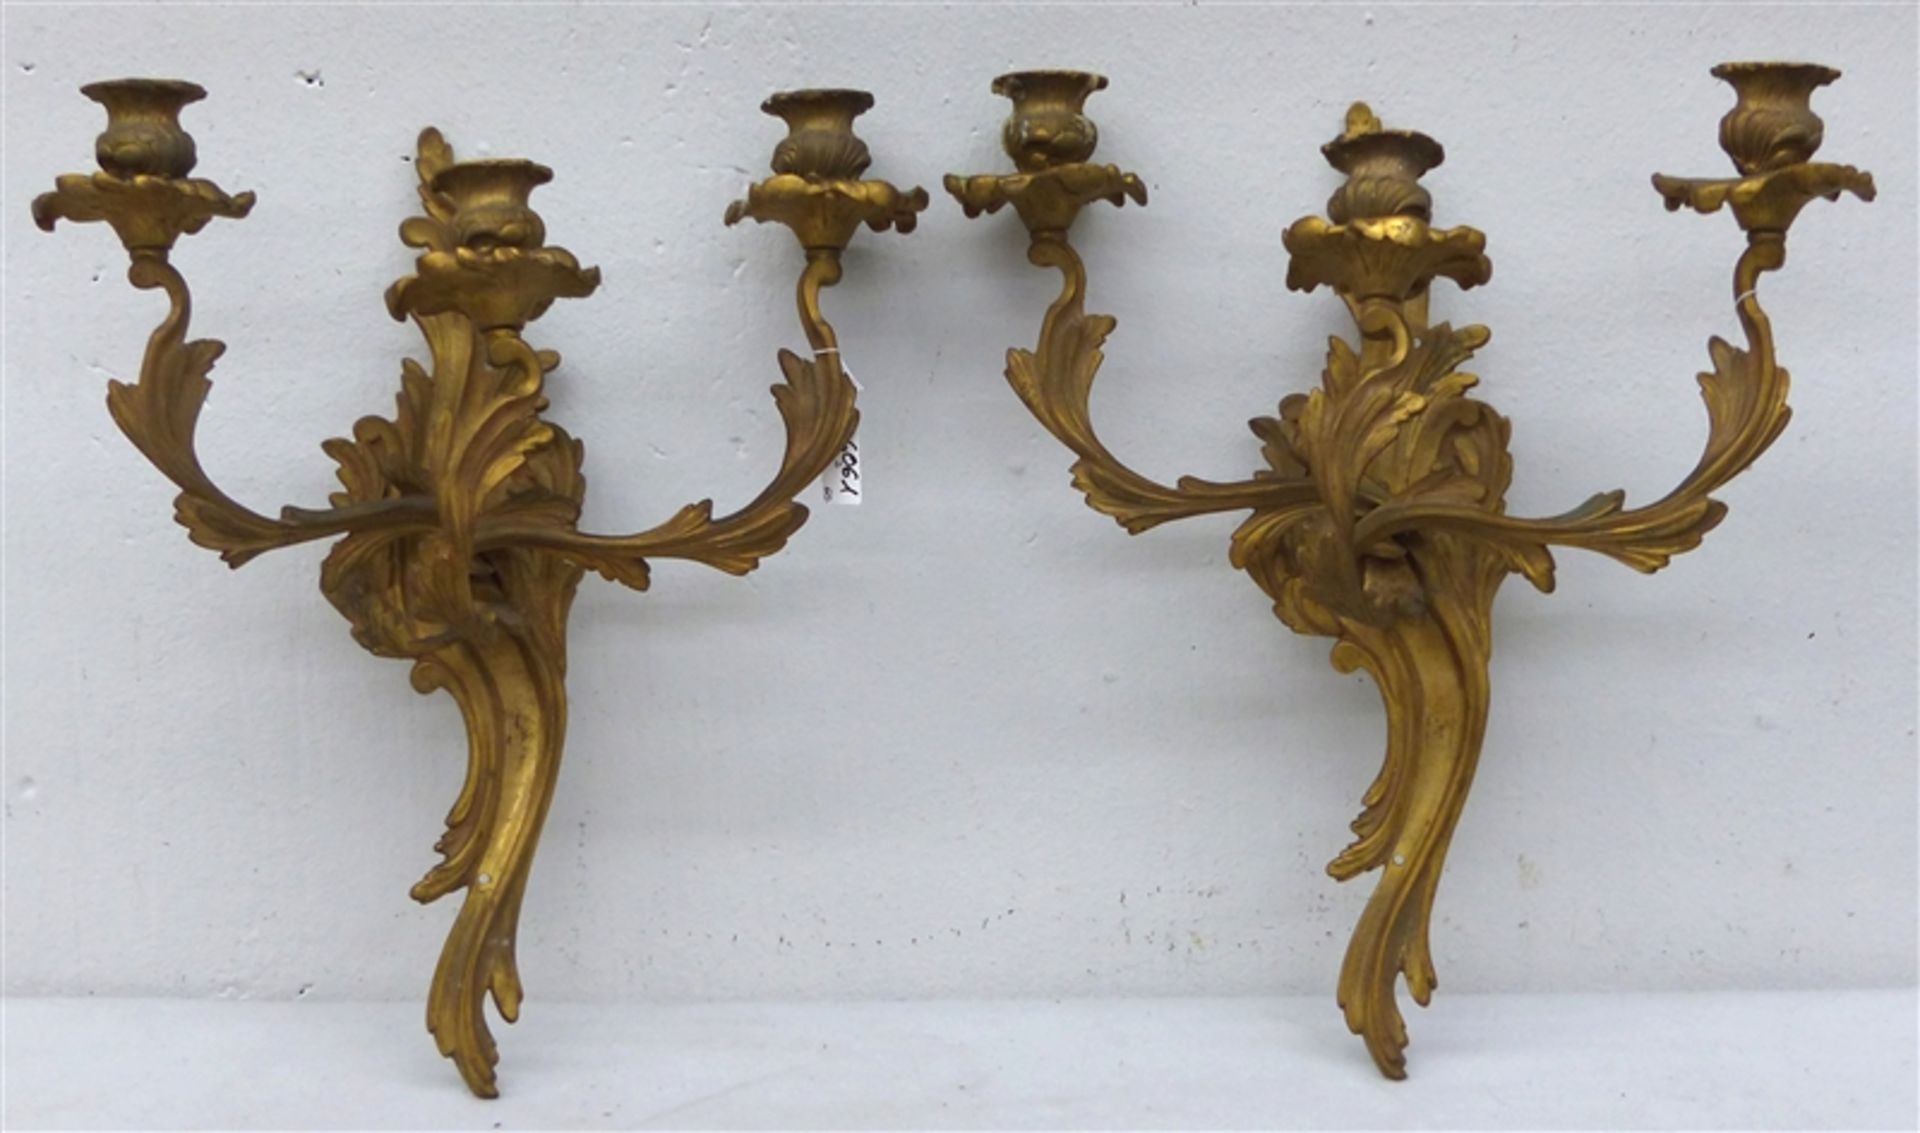 Paar Wandleuchter, 19. Jh. Bronze, vergoldet, je dreiflammig, Rokokoform, h 39 cm